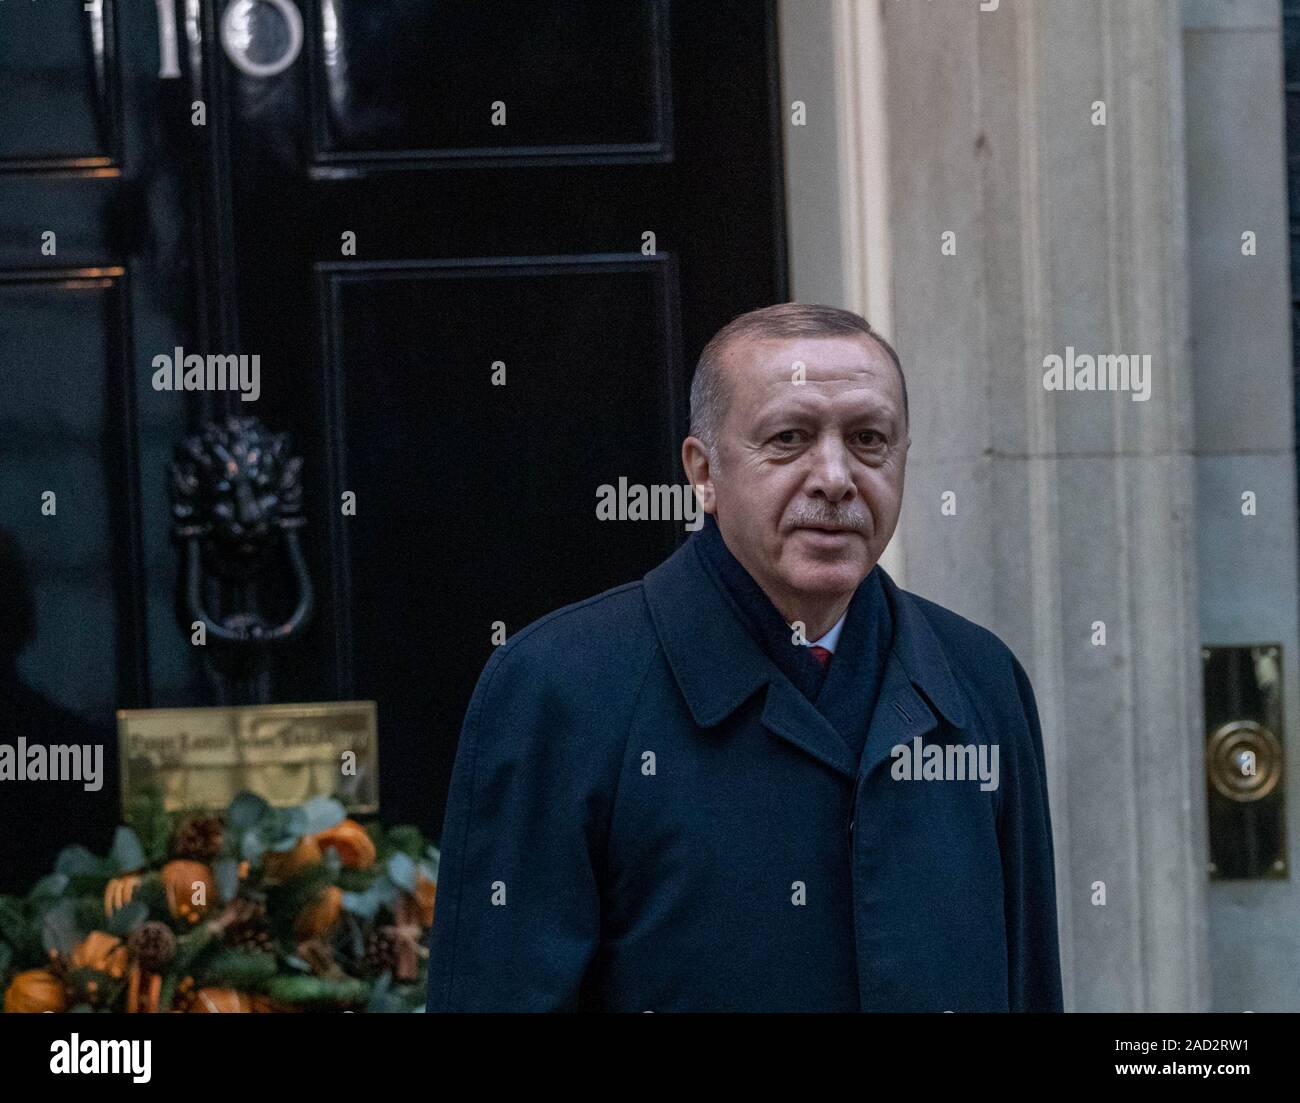 31/12/2019 London UK 3e les dirigeants de l'OTAN arrivent au 10 Downing Street durant le sommet de l'OTAN, Recep Tayyip Erdogan, Président de la Turquie Ian Crédit DavidsonAlamy Live News Banque D'Images